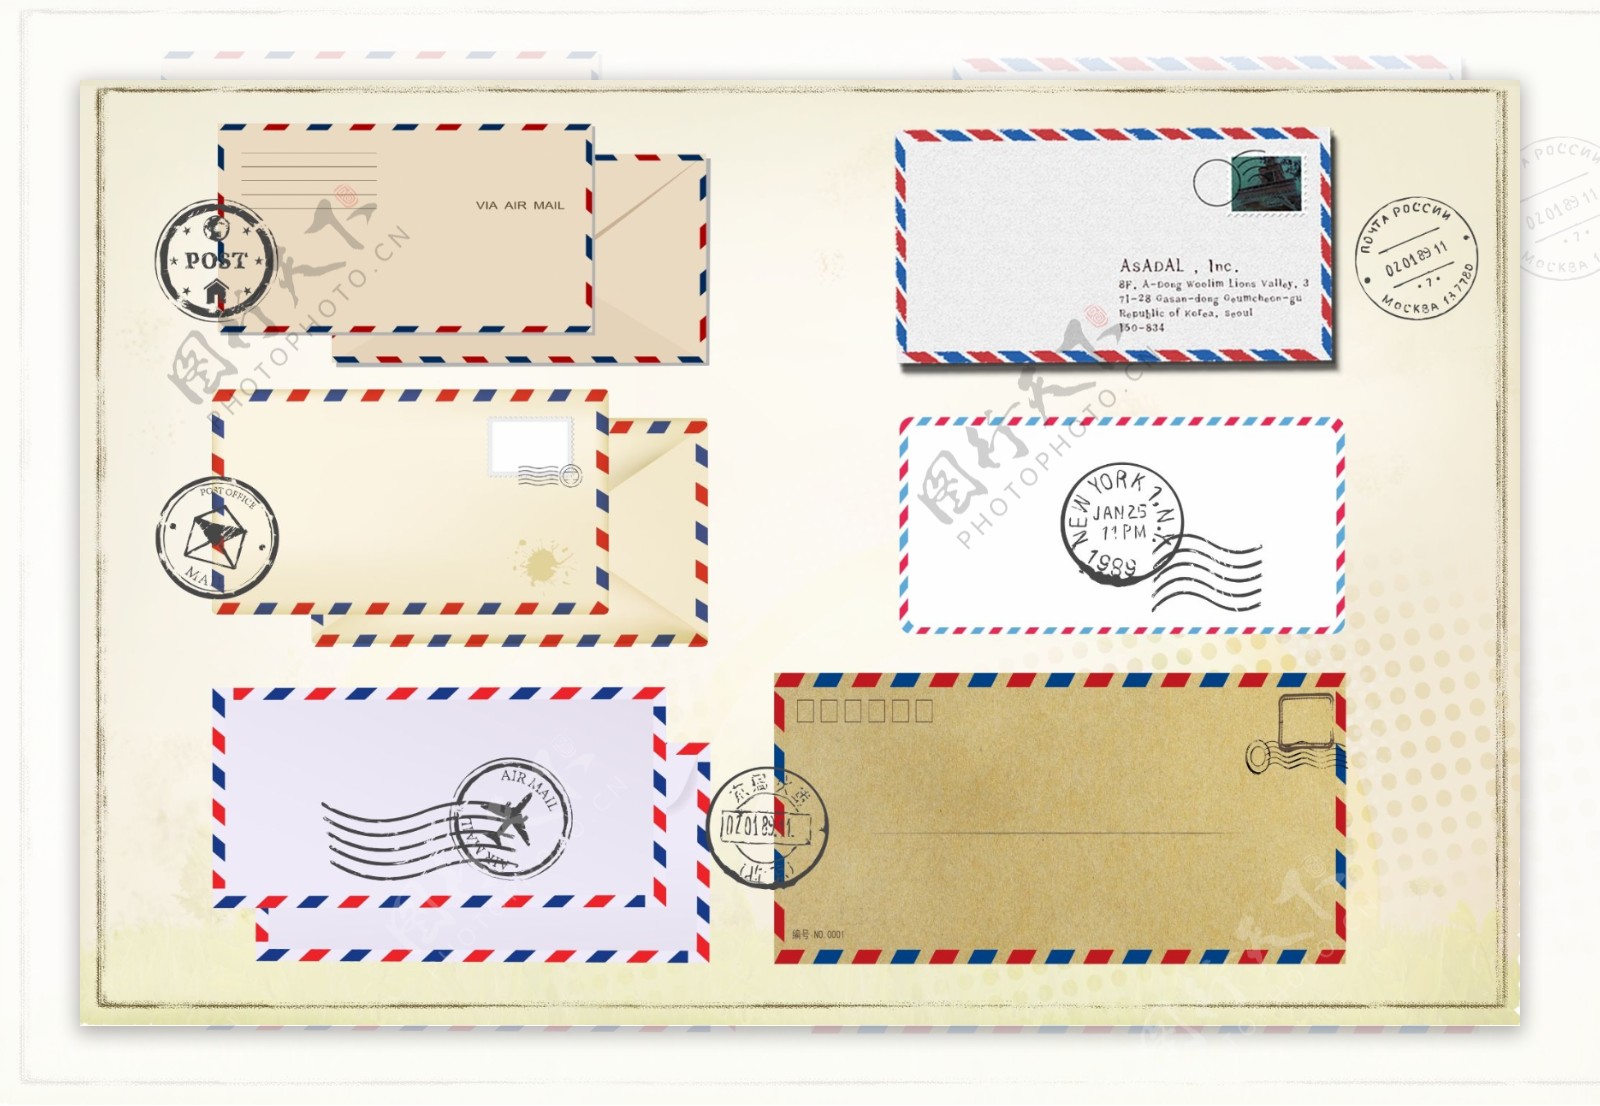 经典红蓝信封信纸设计带邮戳